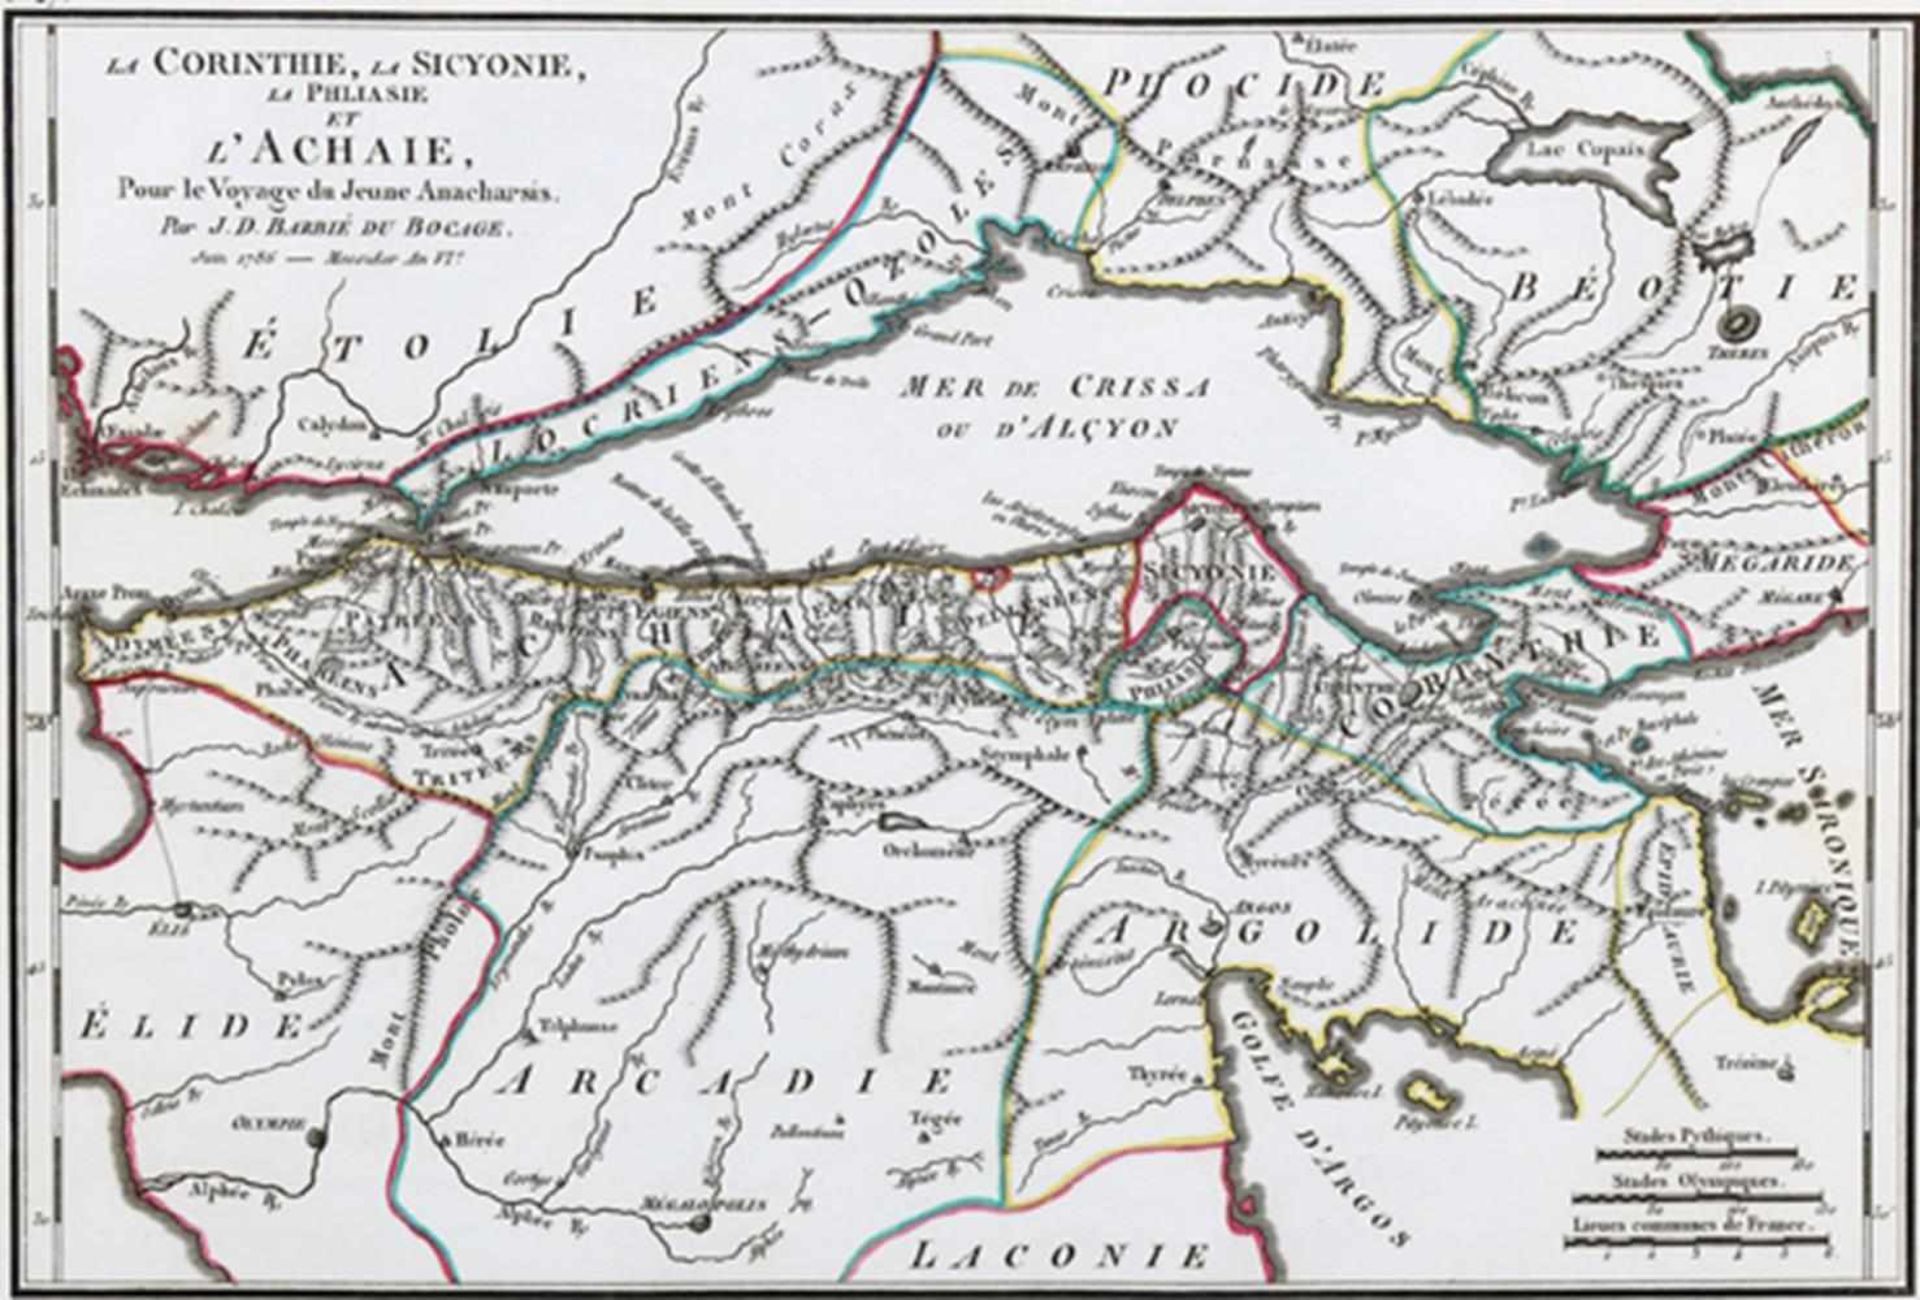 Barthelemy,J.J.Recueil de Cartes Geographiques, plans, vues, et medailles de l'ancienne Grece, - Image 3 of 3